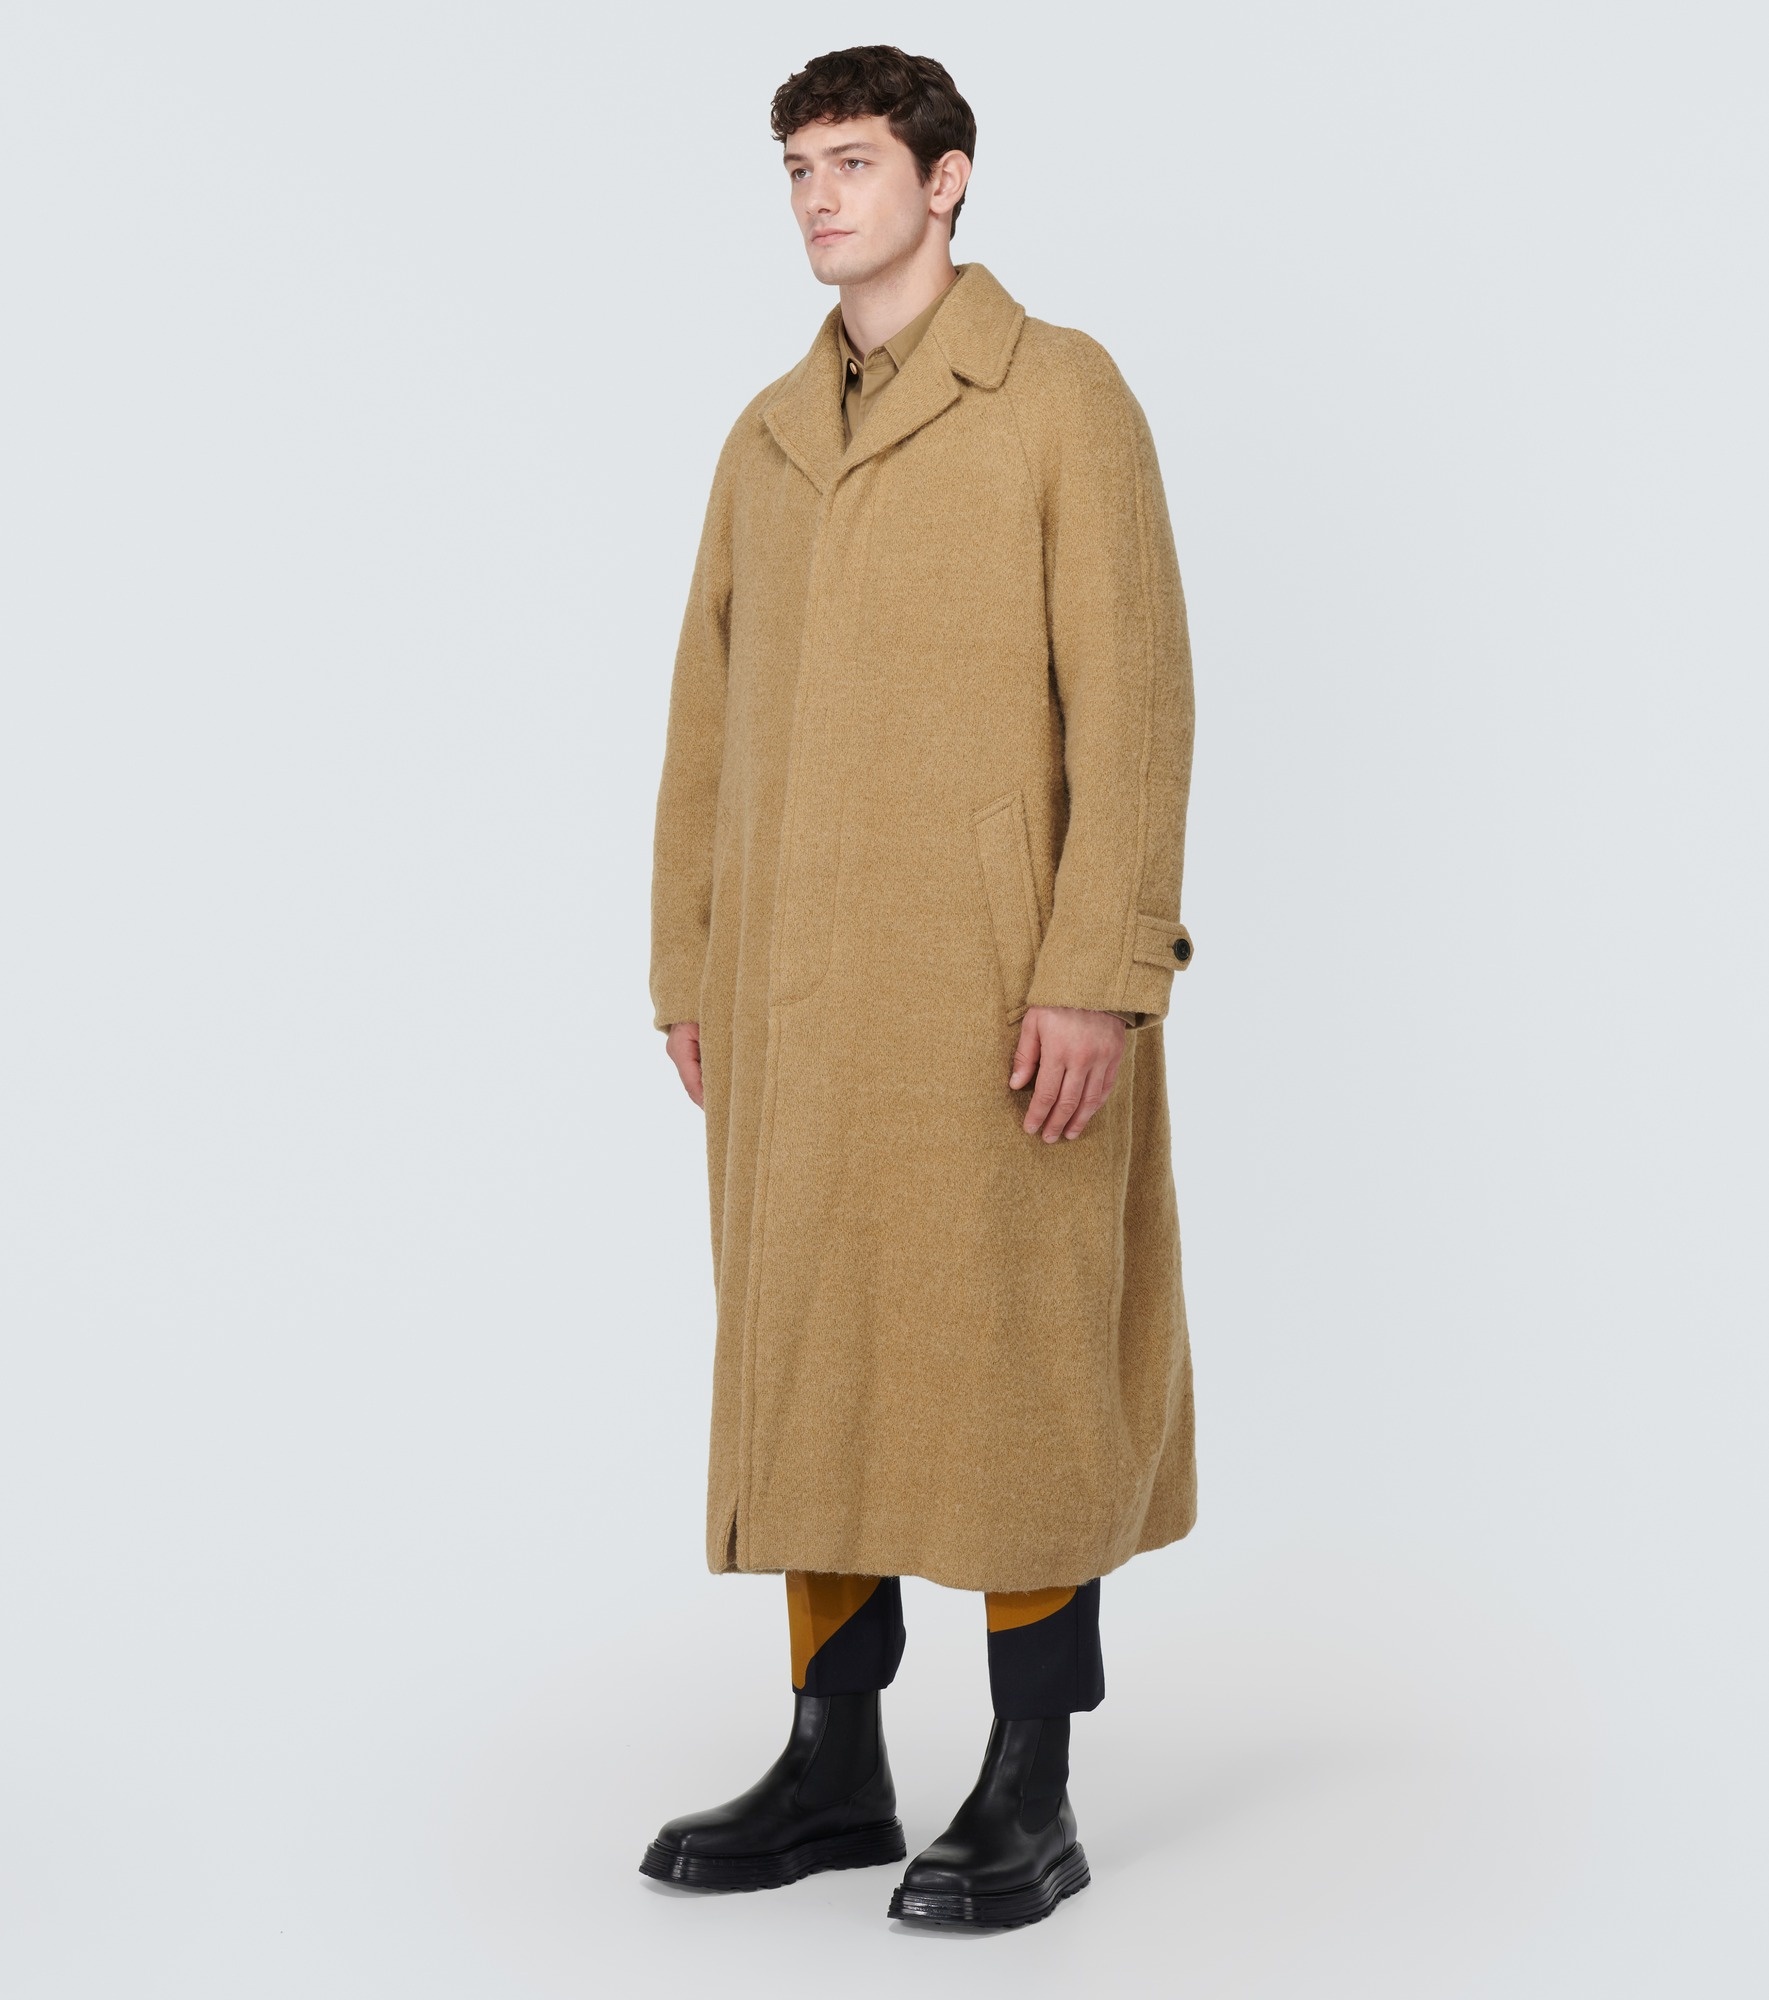 Jute and wool coat - 3